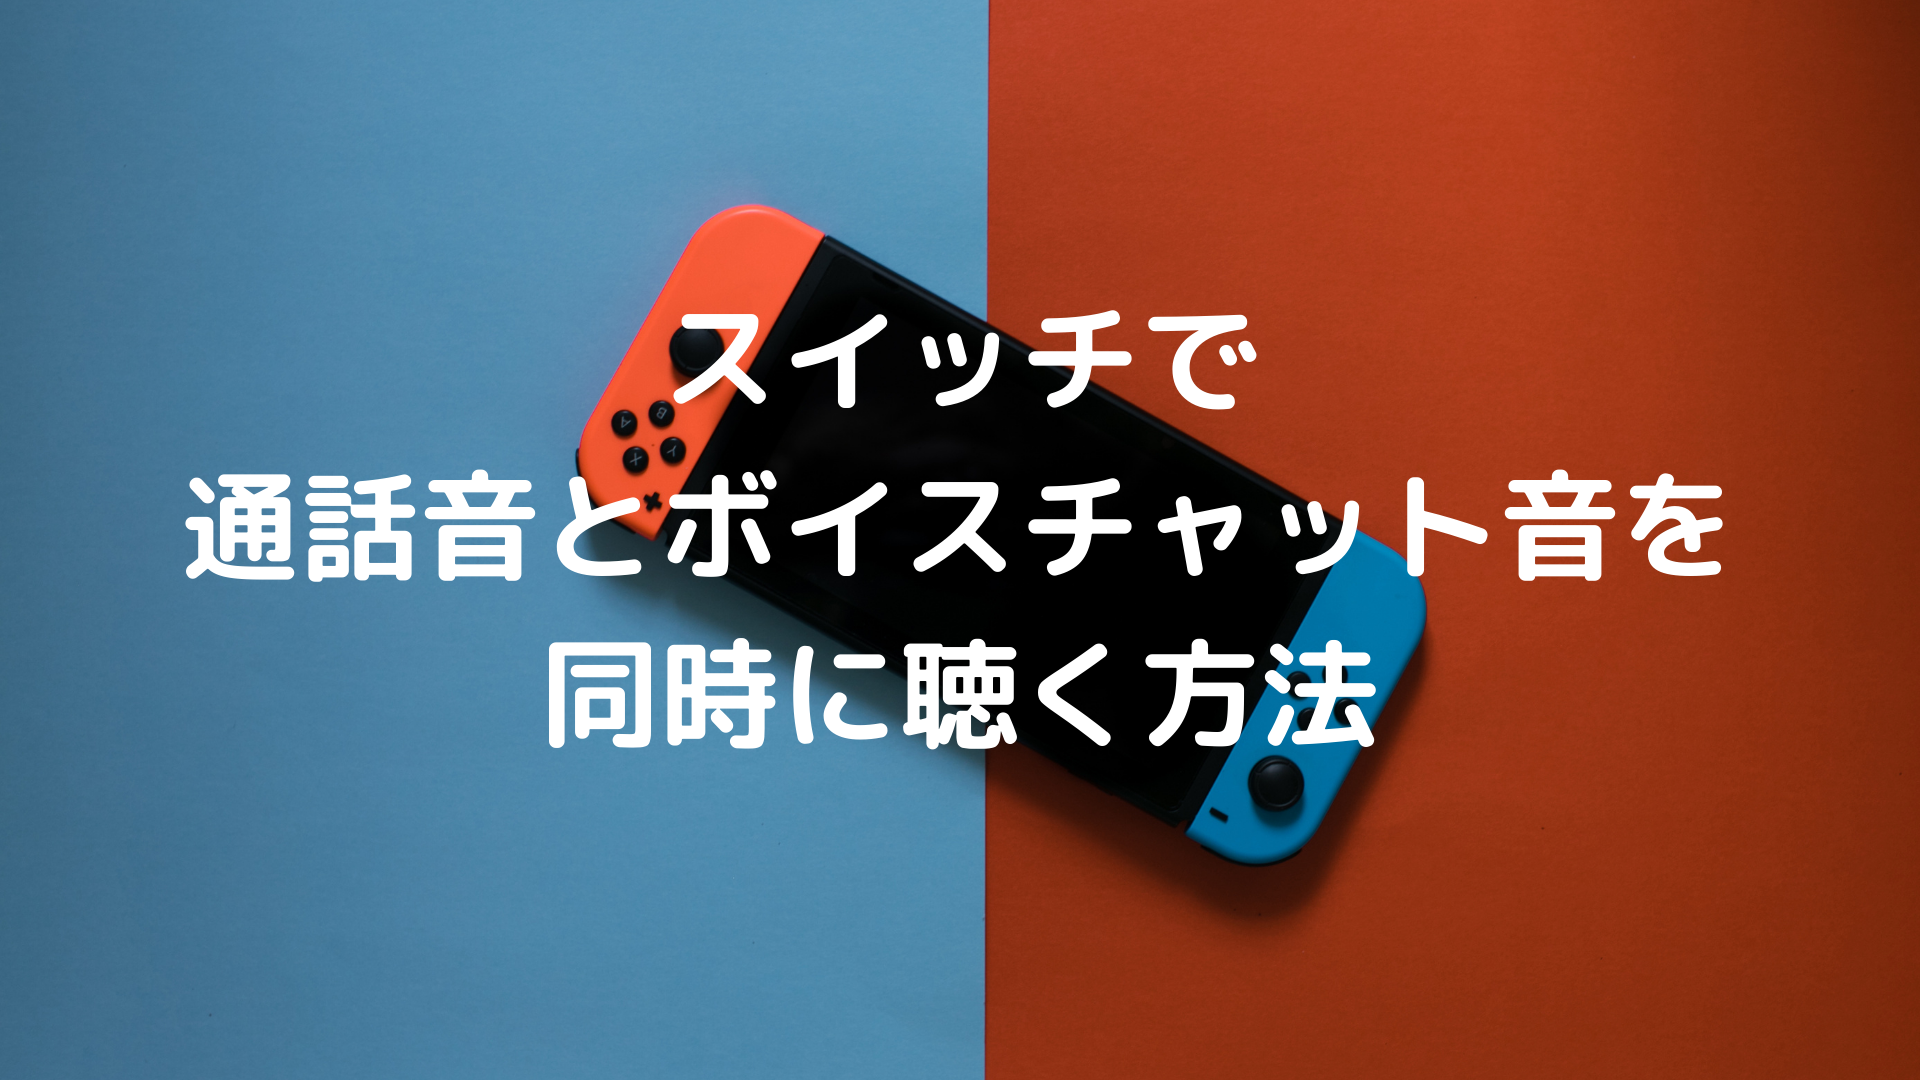 Nintendo Switch ゲーム音と通話音 Discord Lineなど を同時に聴く方法 ゆはびぃぃぃぃむ